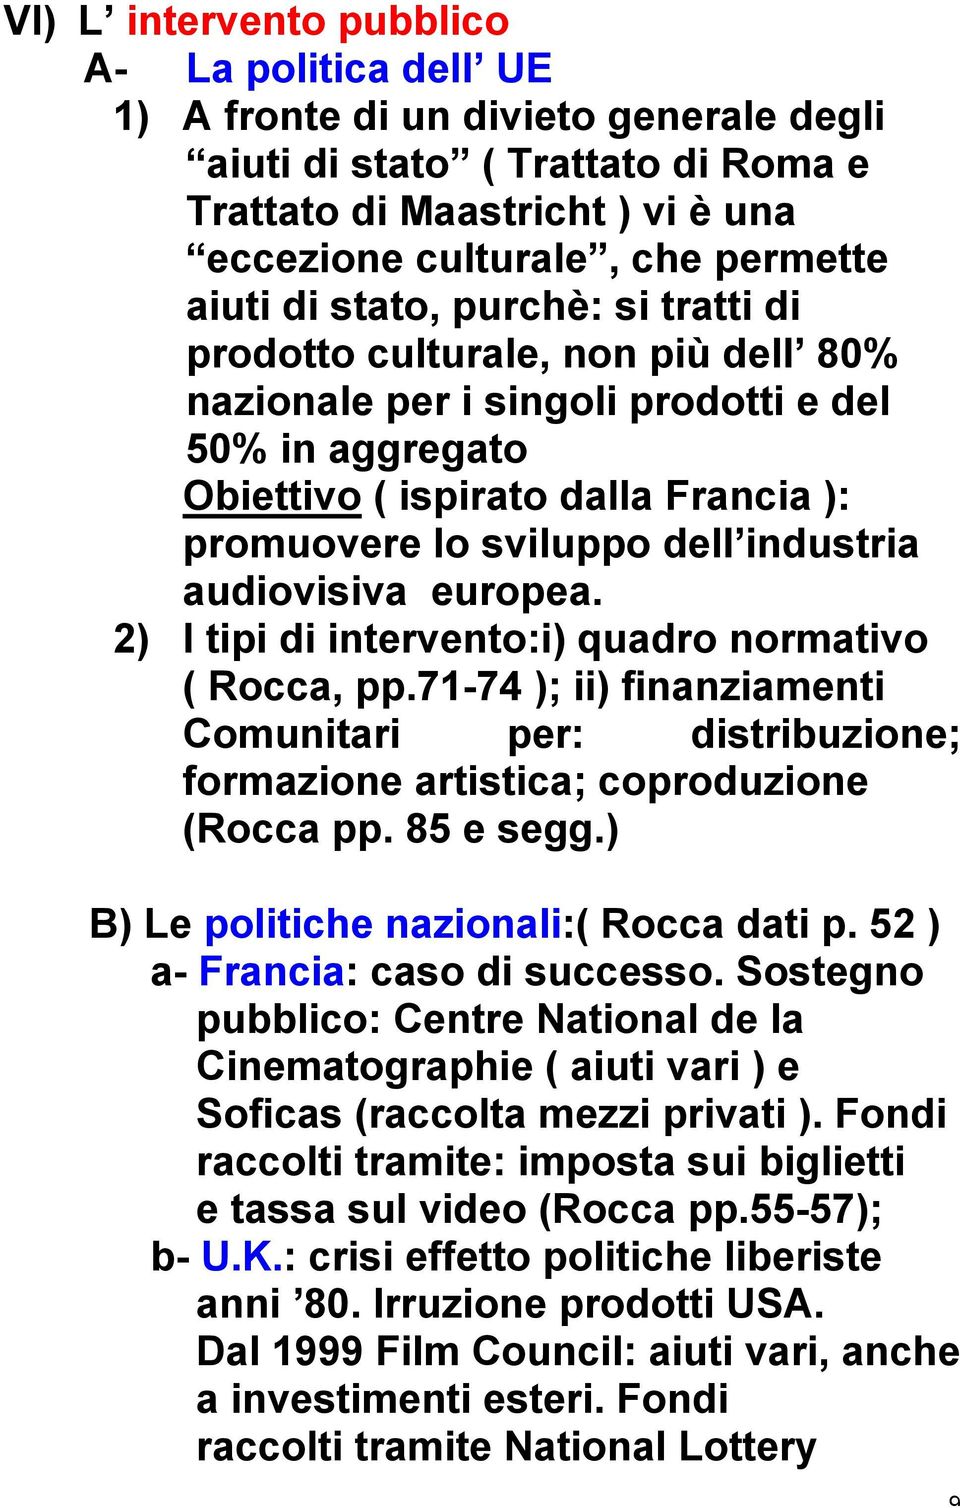 audiovisiva europea. 2) I tipi di intervento:i) quadro normativo ( Rocca, pp.71-74 ); ii) finanziamenti Comunitari per: distribuzione; formazione artistica; coproduzione (Rocca pp. 85 e segg.